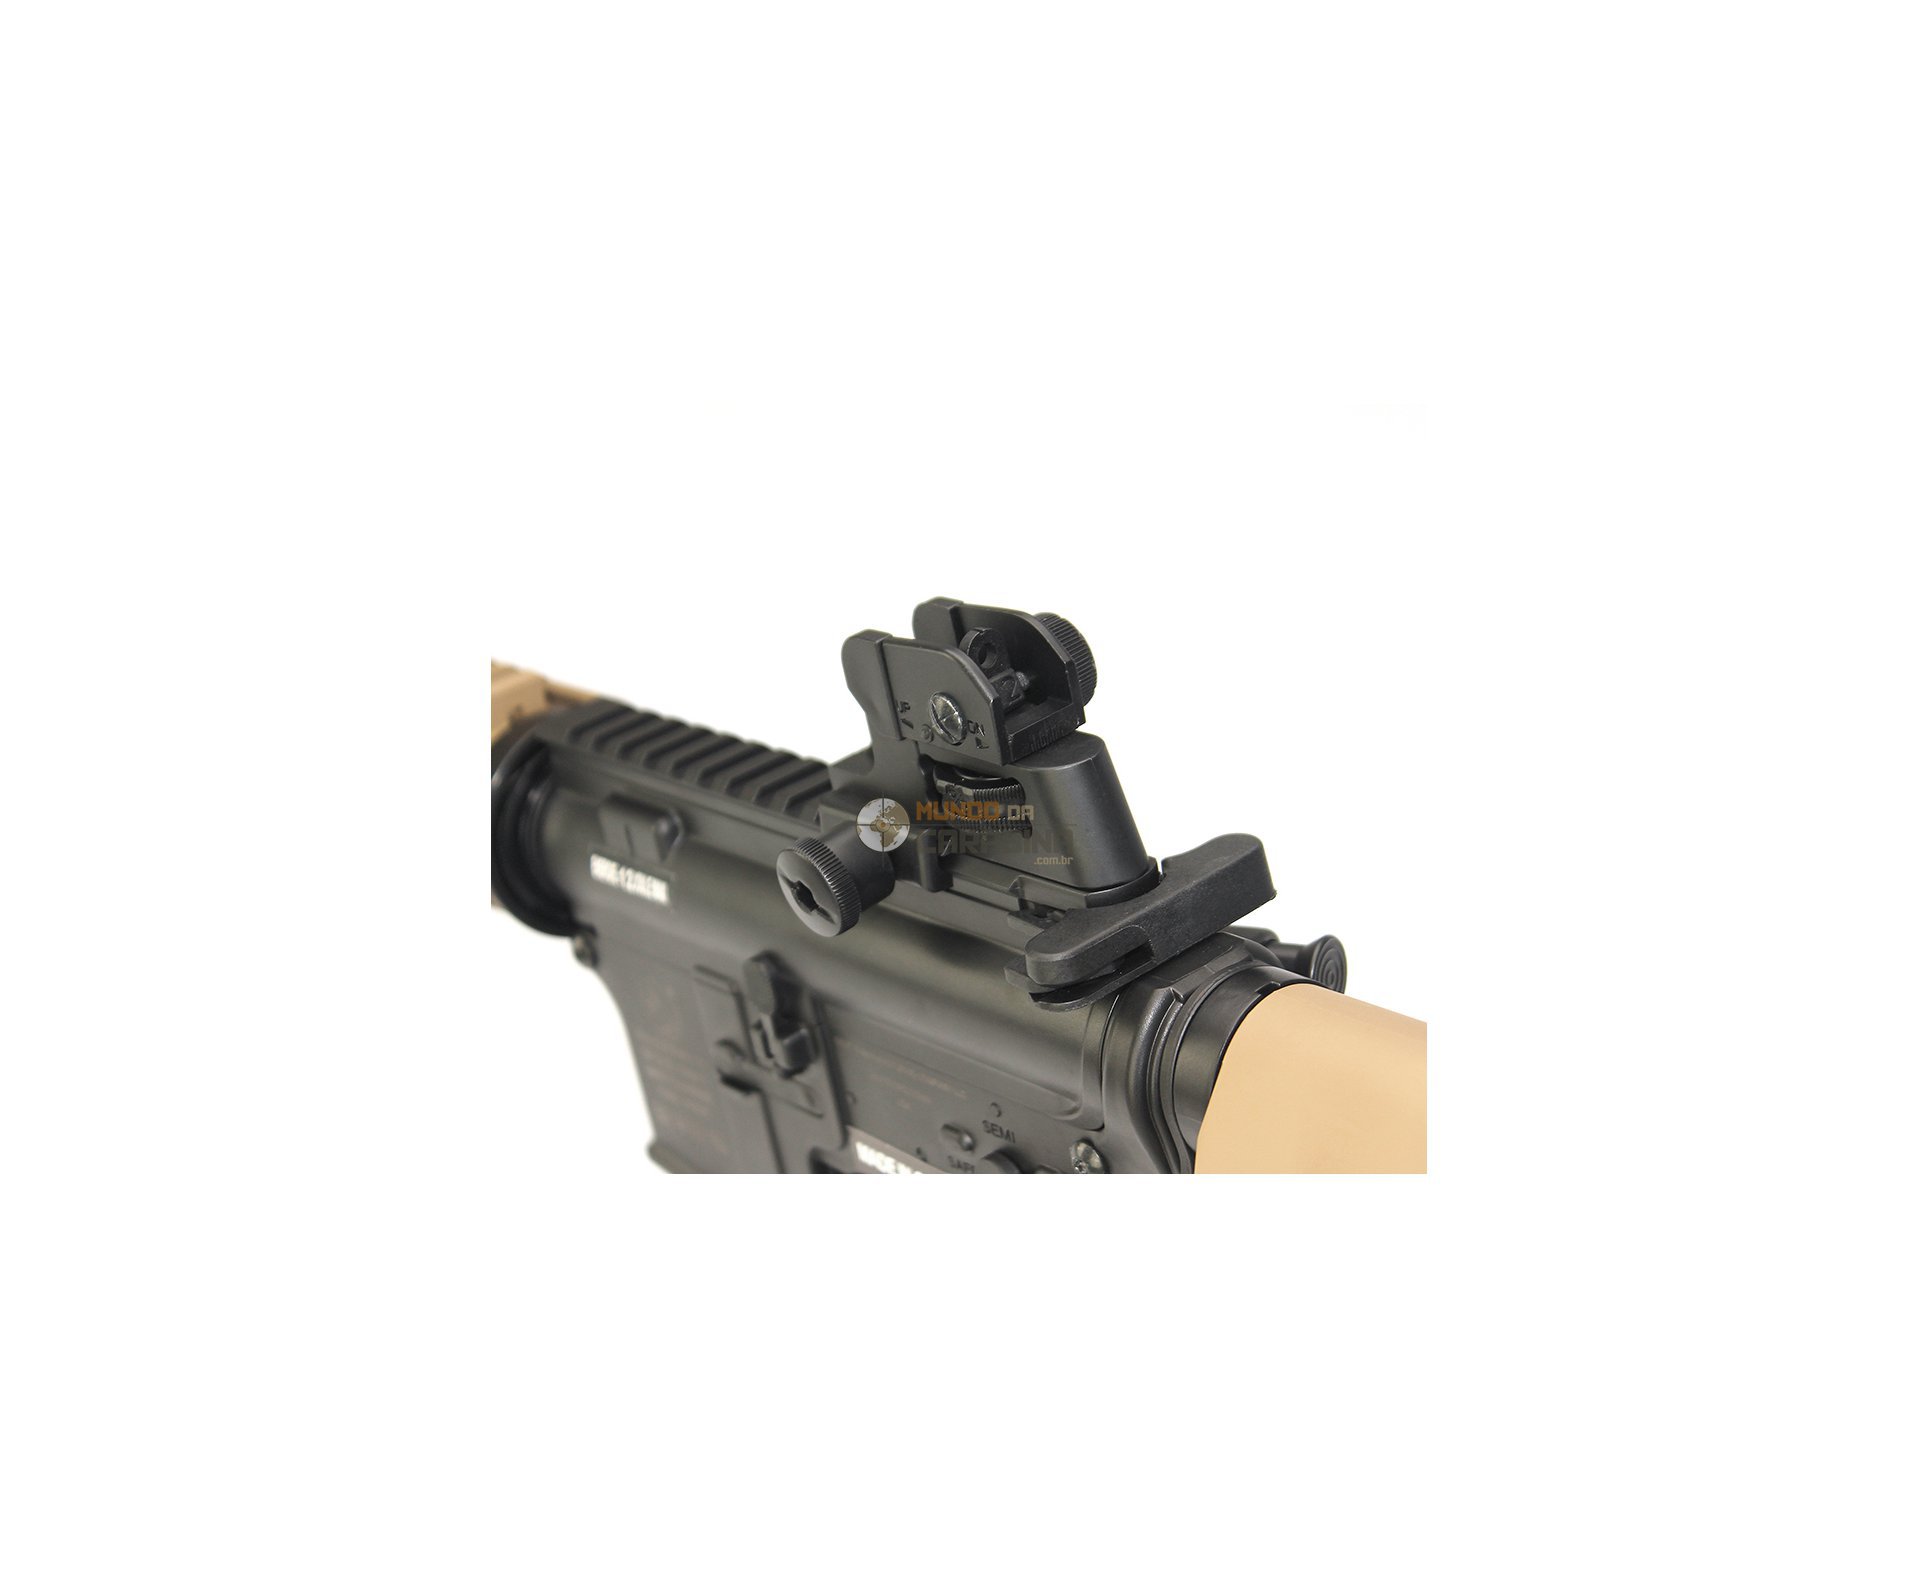 Rifle De Airsoft Colt M4 Ris Cqb Semi Metal Aeg - Edição Marcos Do Val - Cybergun - 110 V